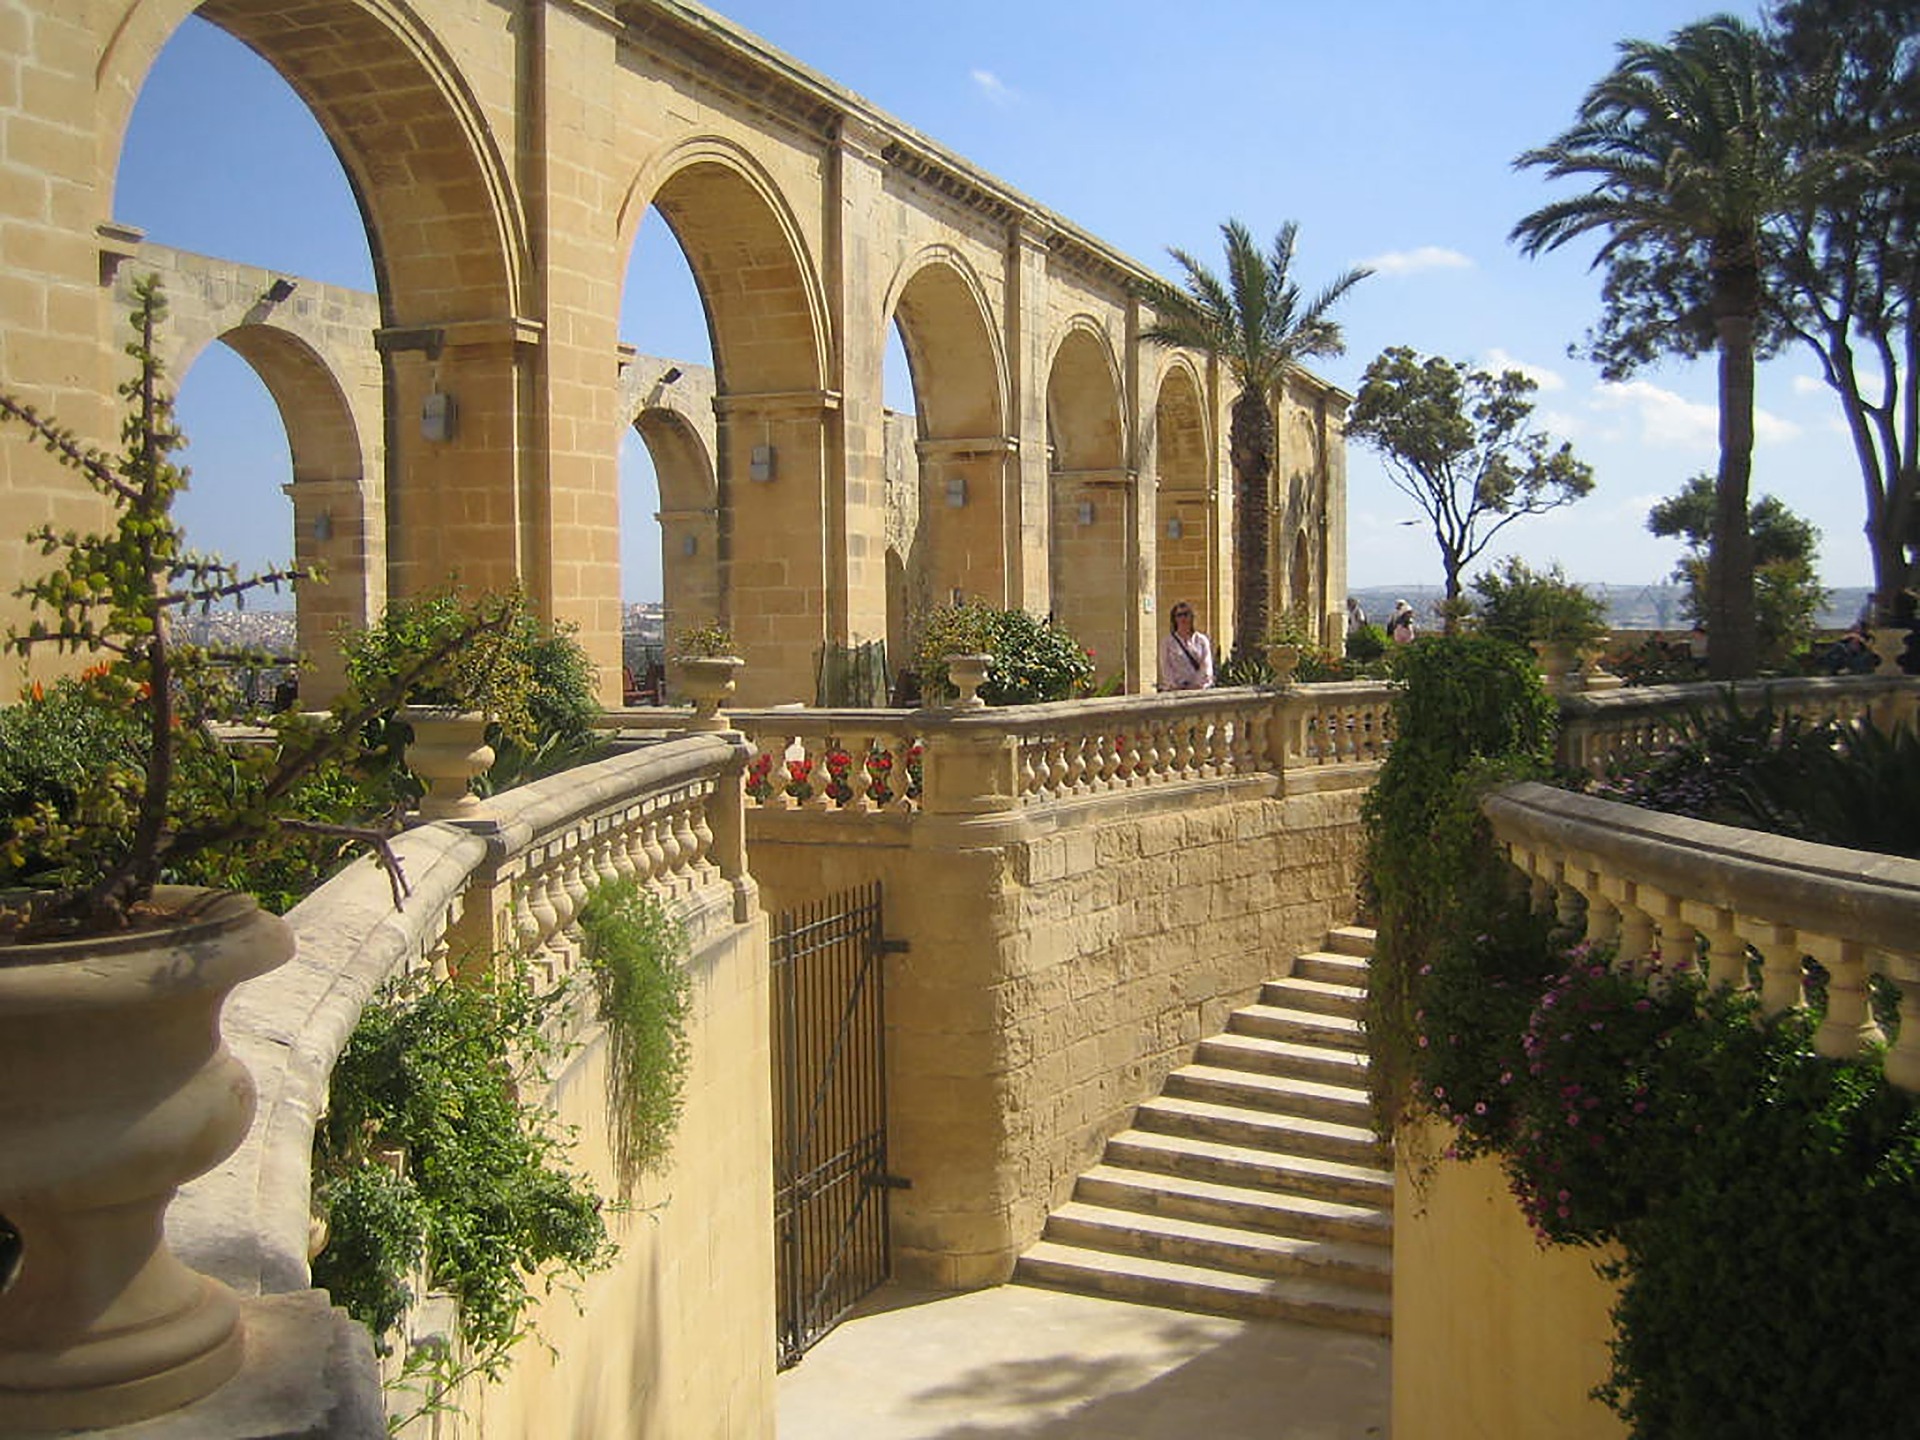 Urlaub auf Malta günstig buchen und die Architektur Gebäude auf den Inseln bewundern